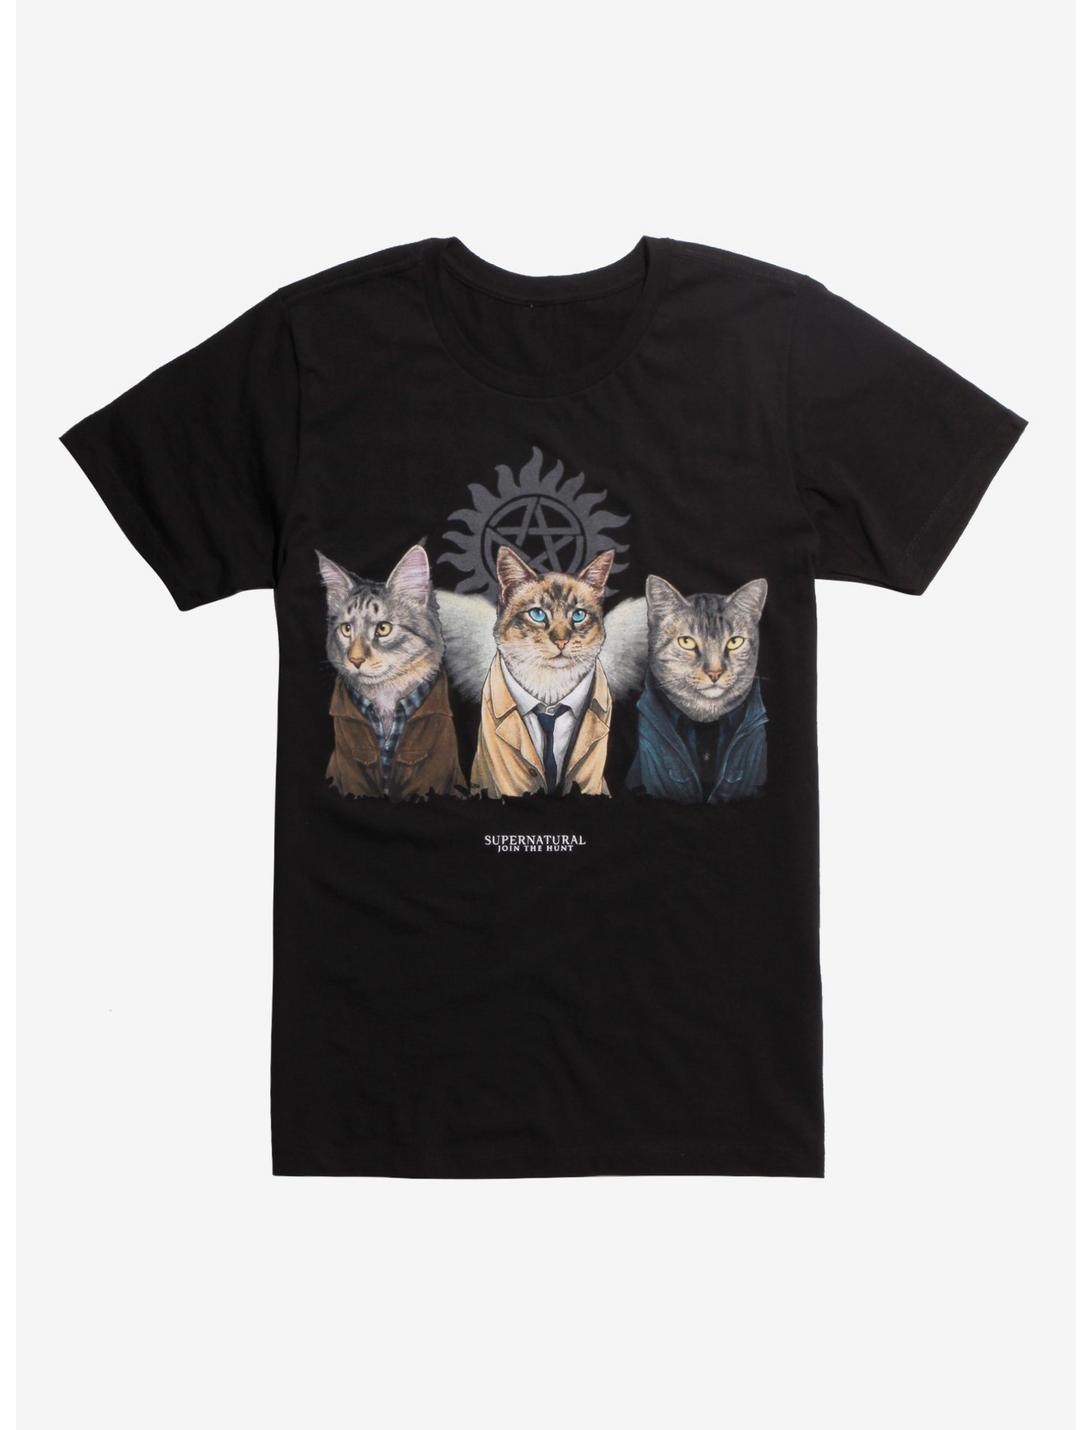 Supernatural Jenny Park Cats T-Shirt Hot Topic Exclusive, BLACK, hi-res